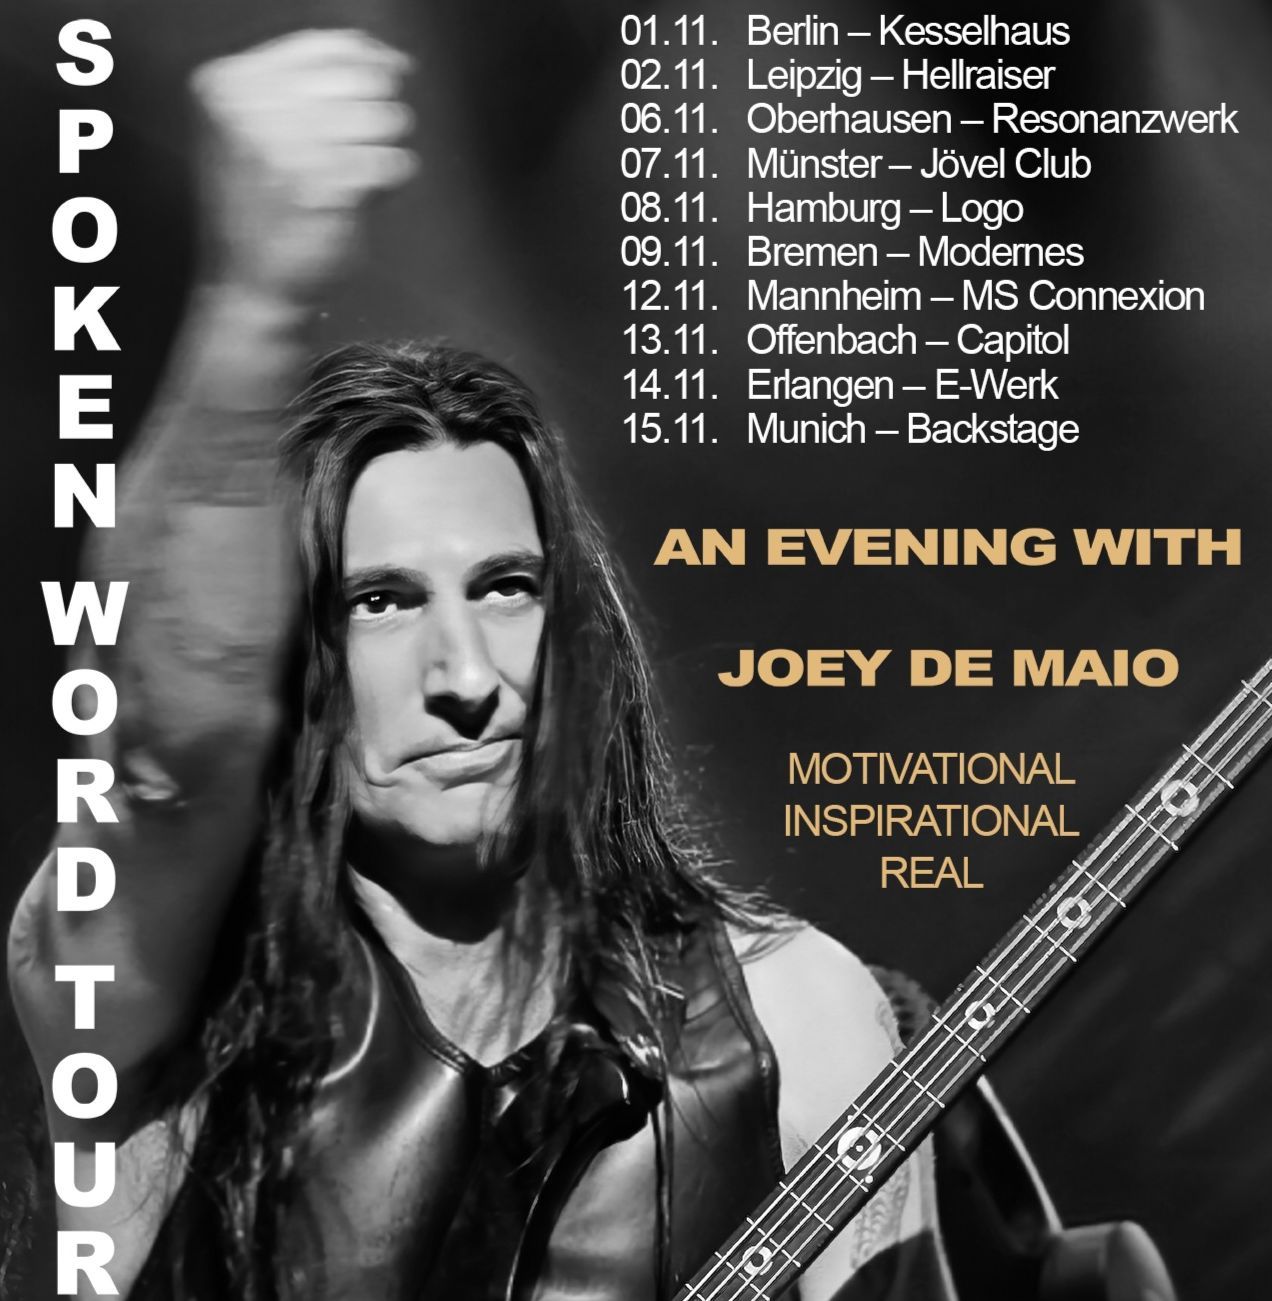 Joey De Maio kündigt "Words Of Power"-Spoken-Word-Tour an